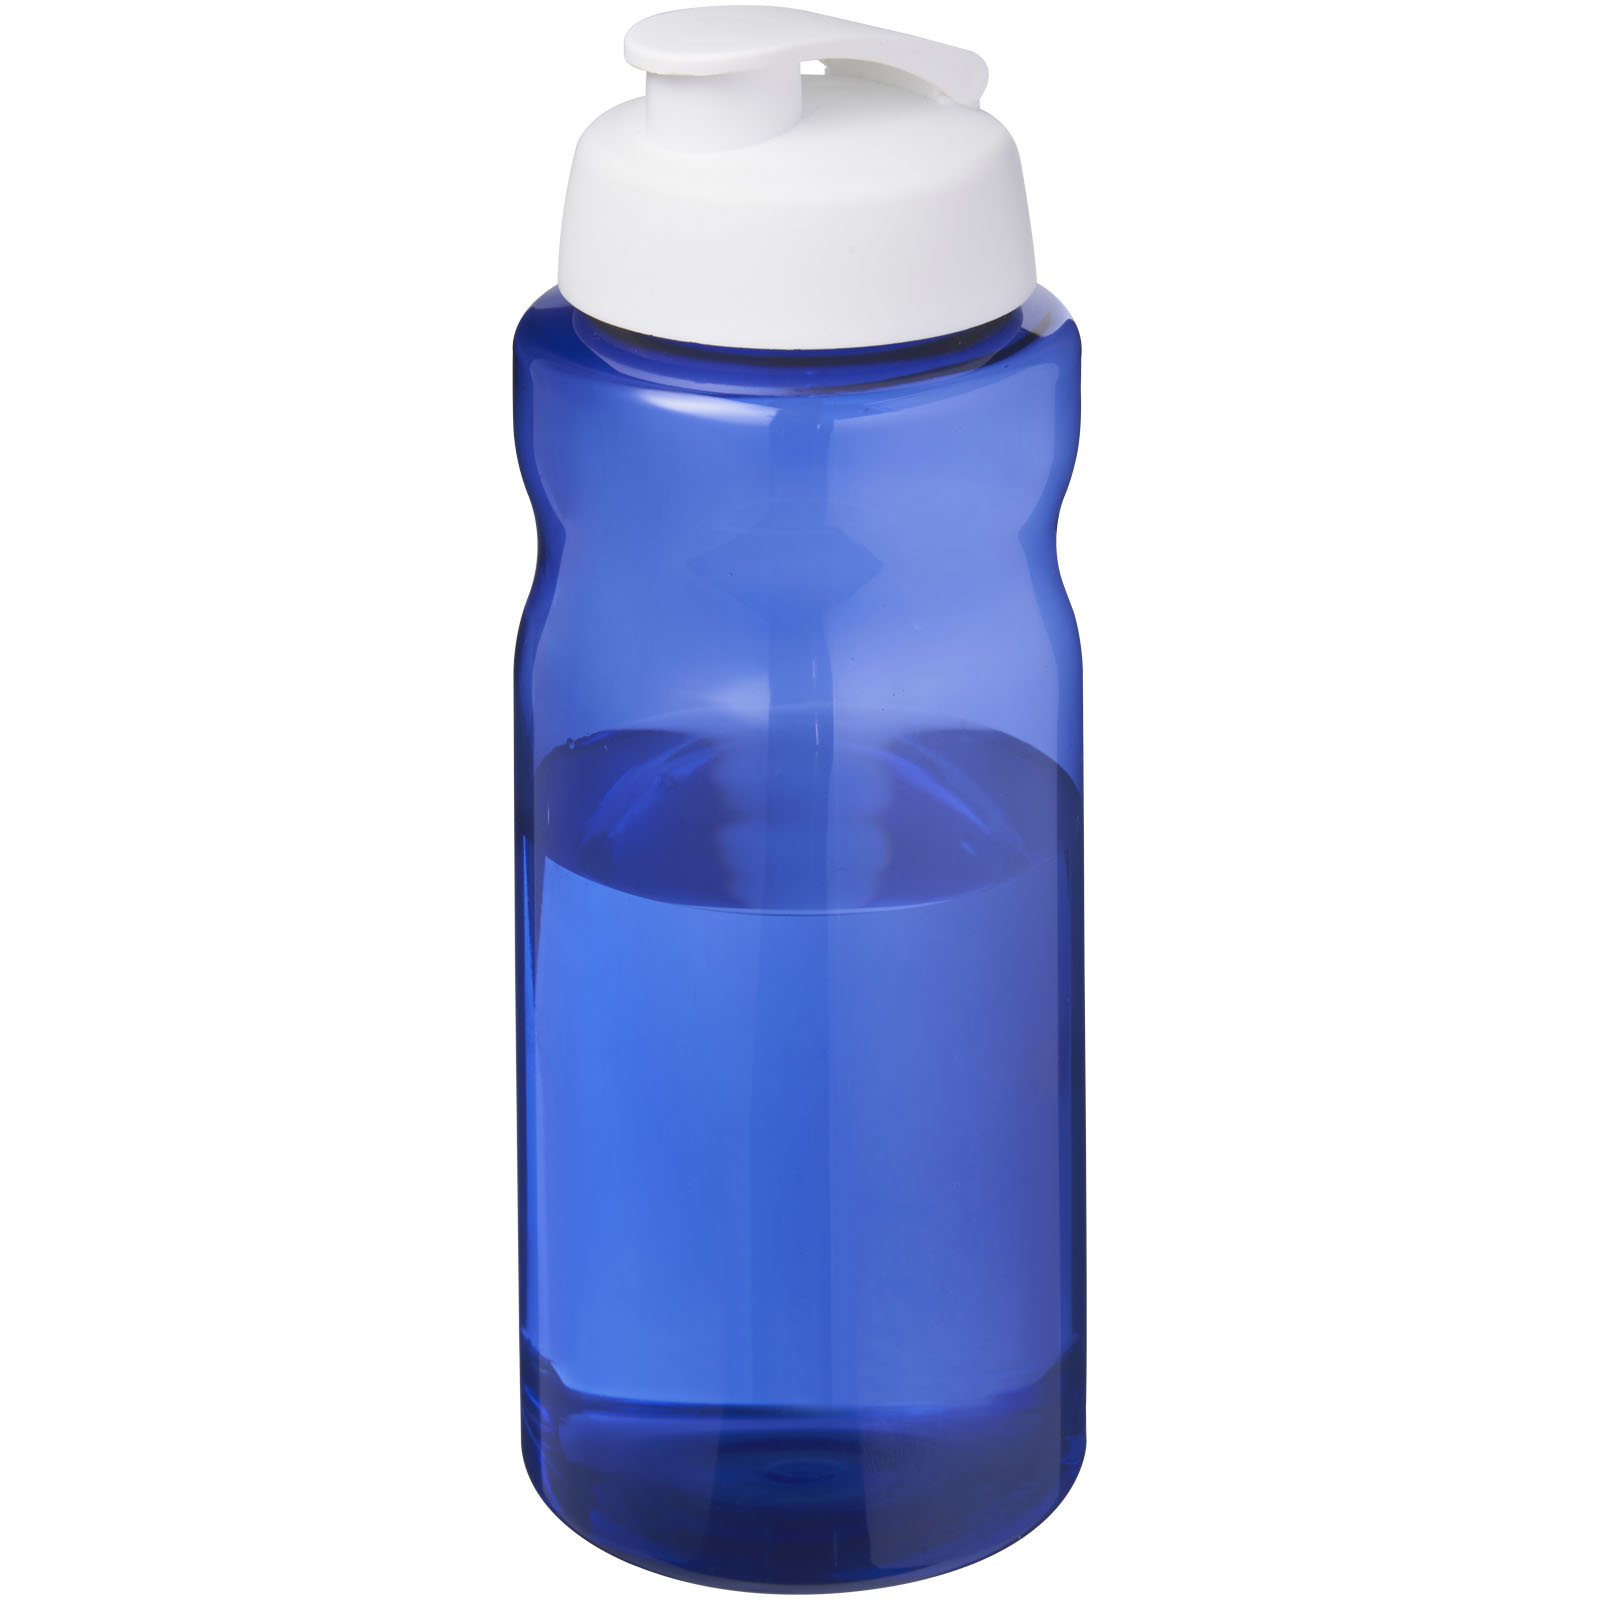 H2O Active® Eco Big Base 1 liter vandflaske med fliplåg